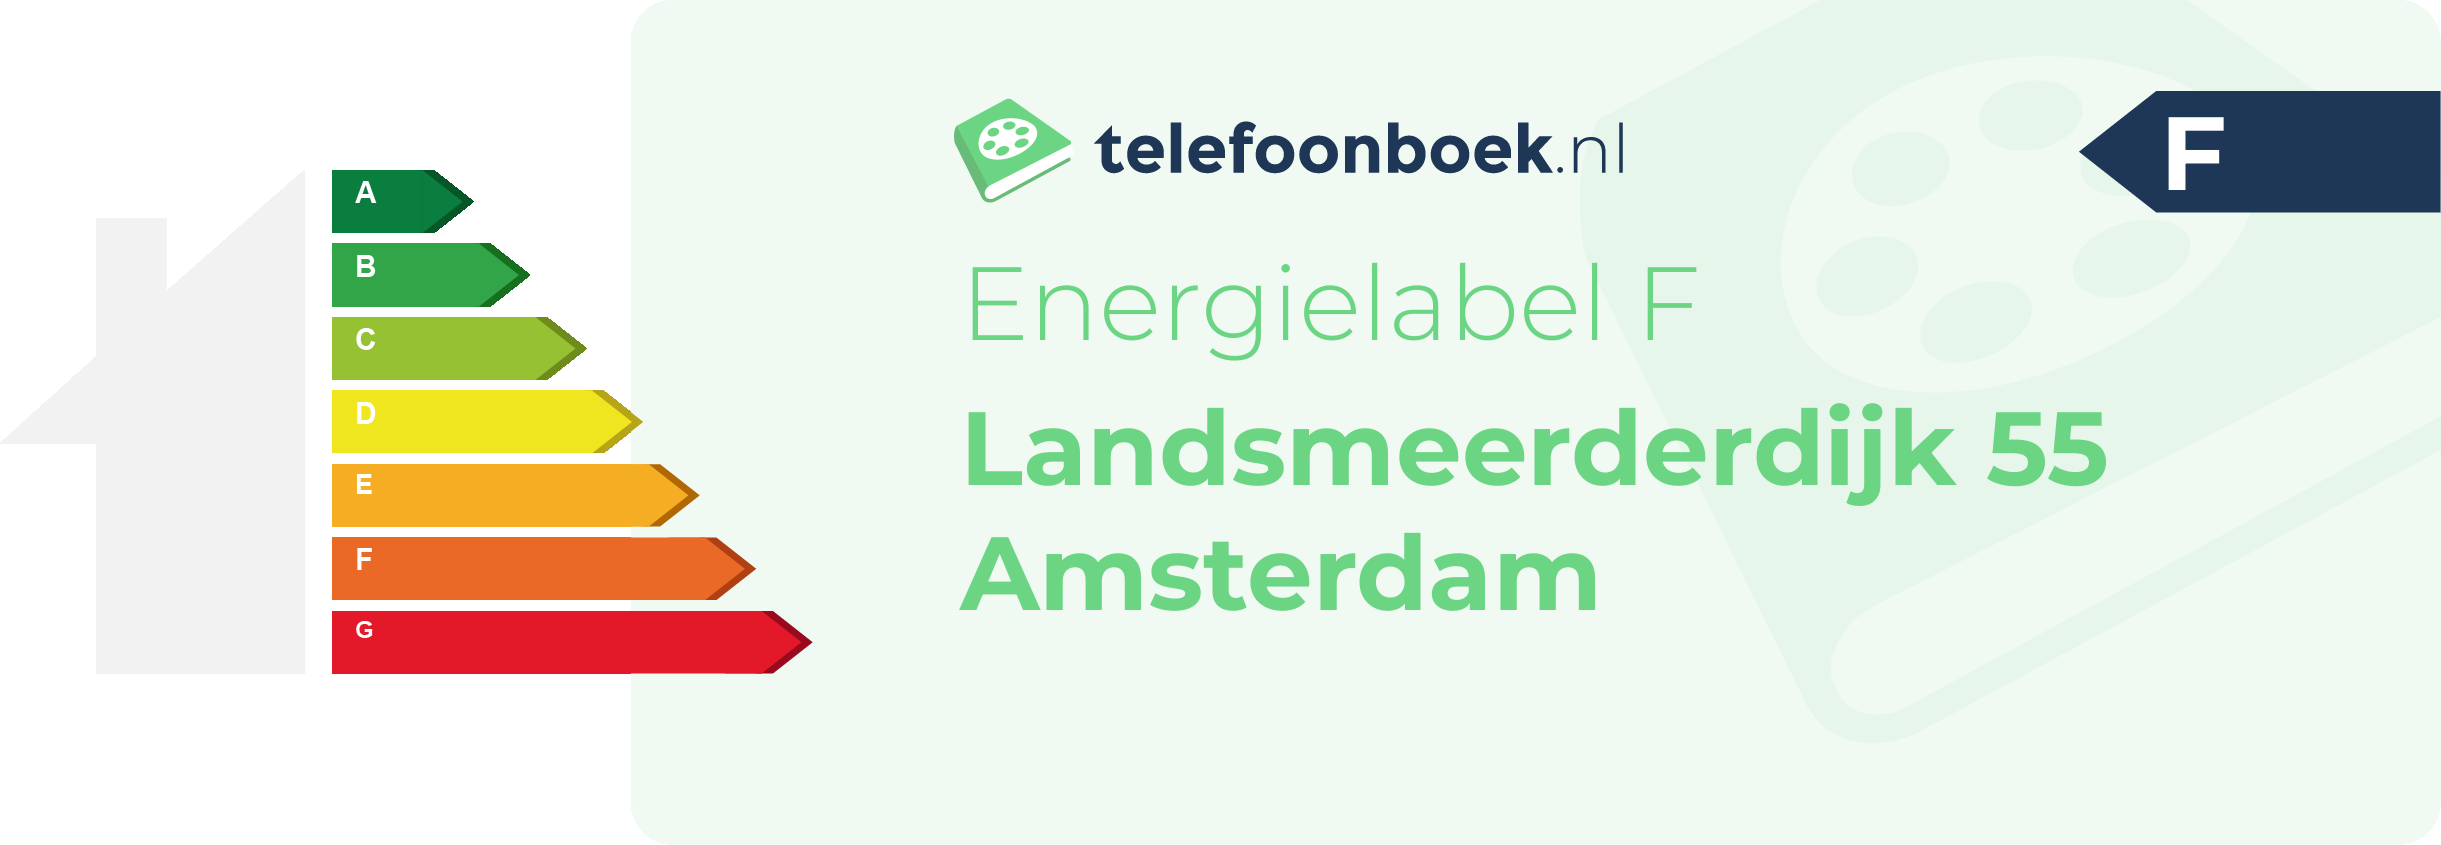 Energielabel Landsmeerderdijk 55 Amsterdam